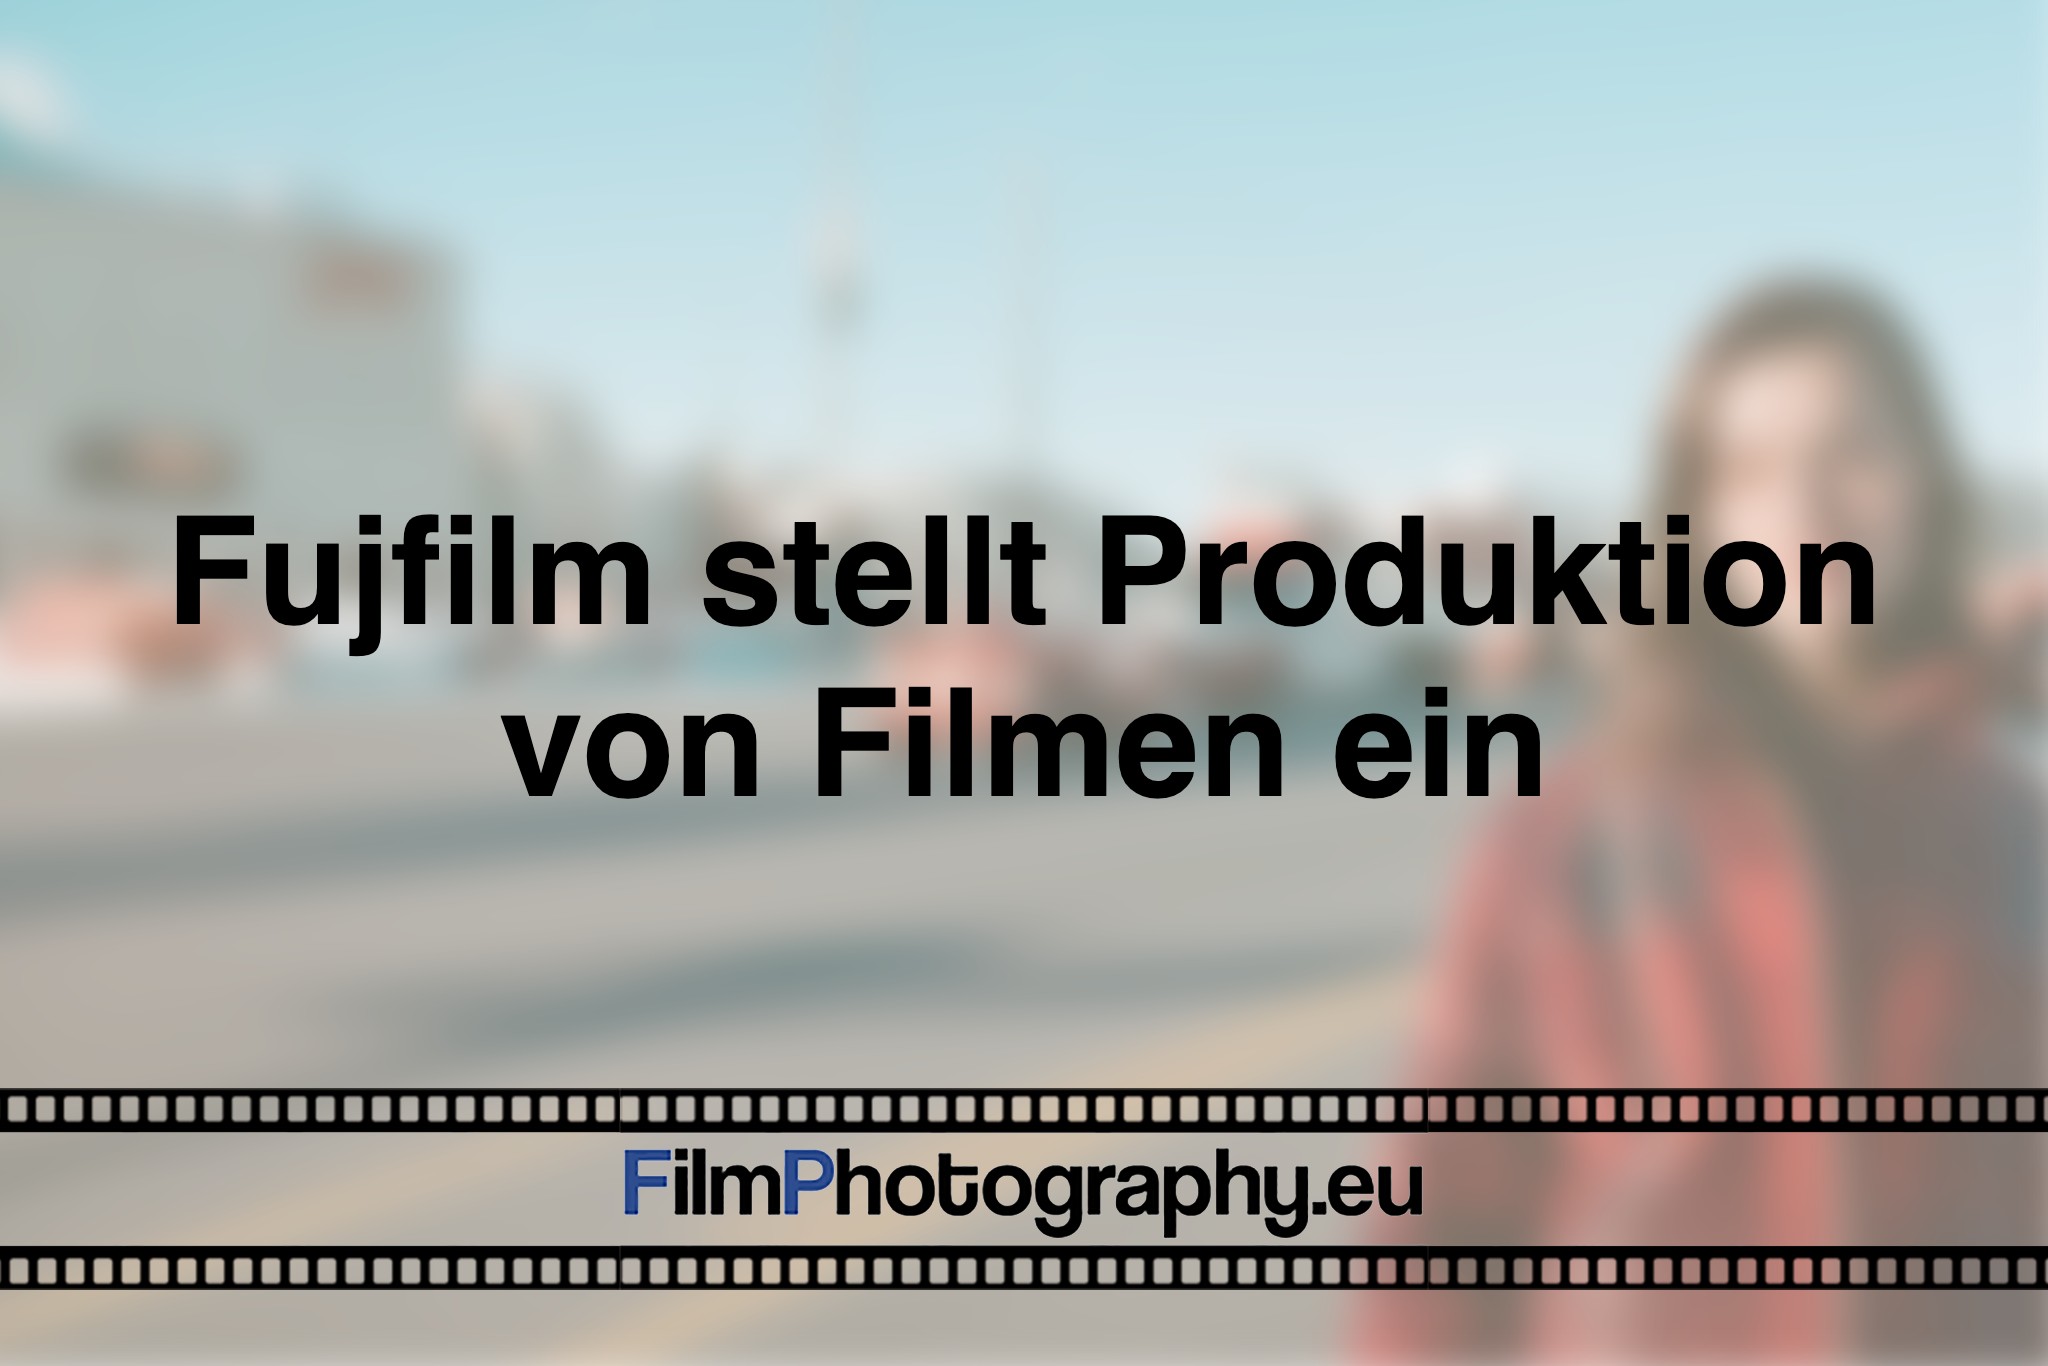 fujfilm-stellt-produktion-von-filmen-ein-photo-bnv